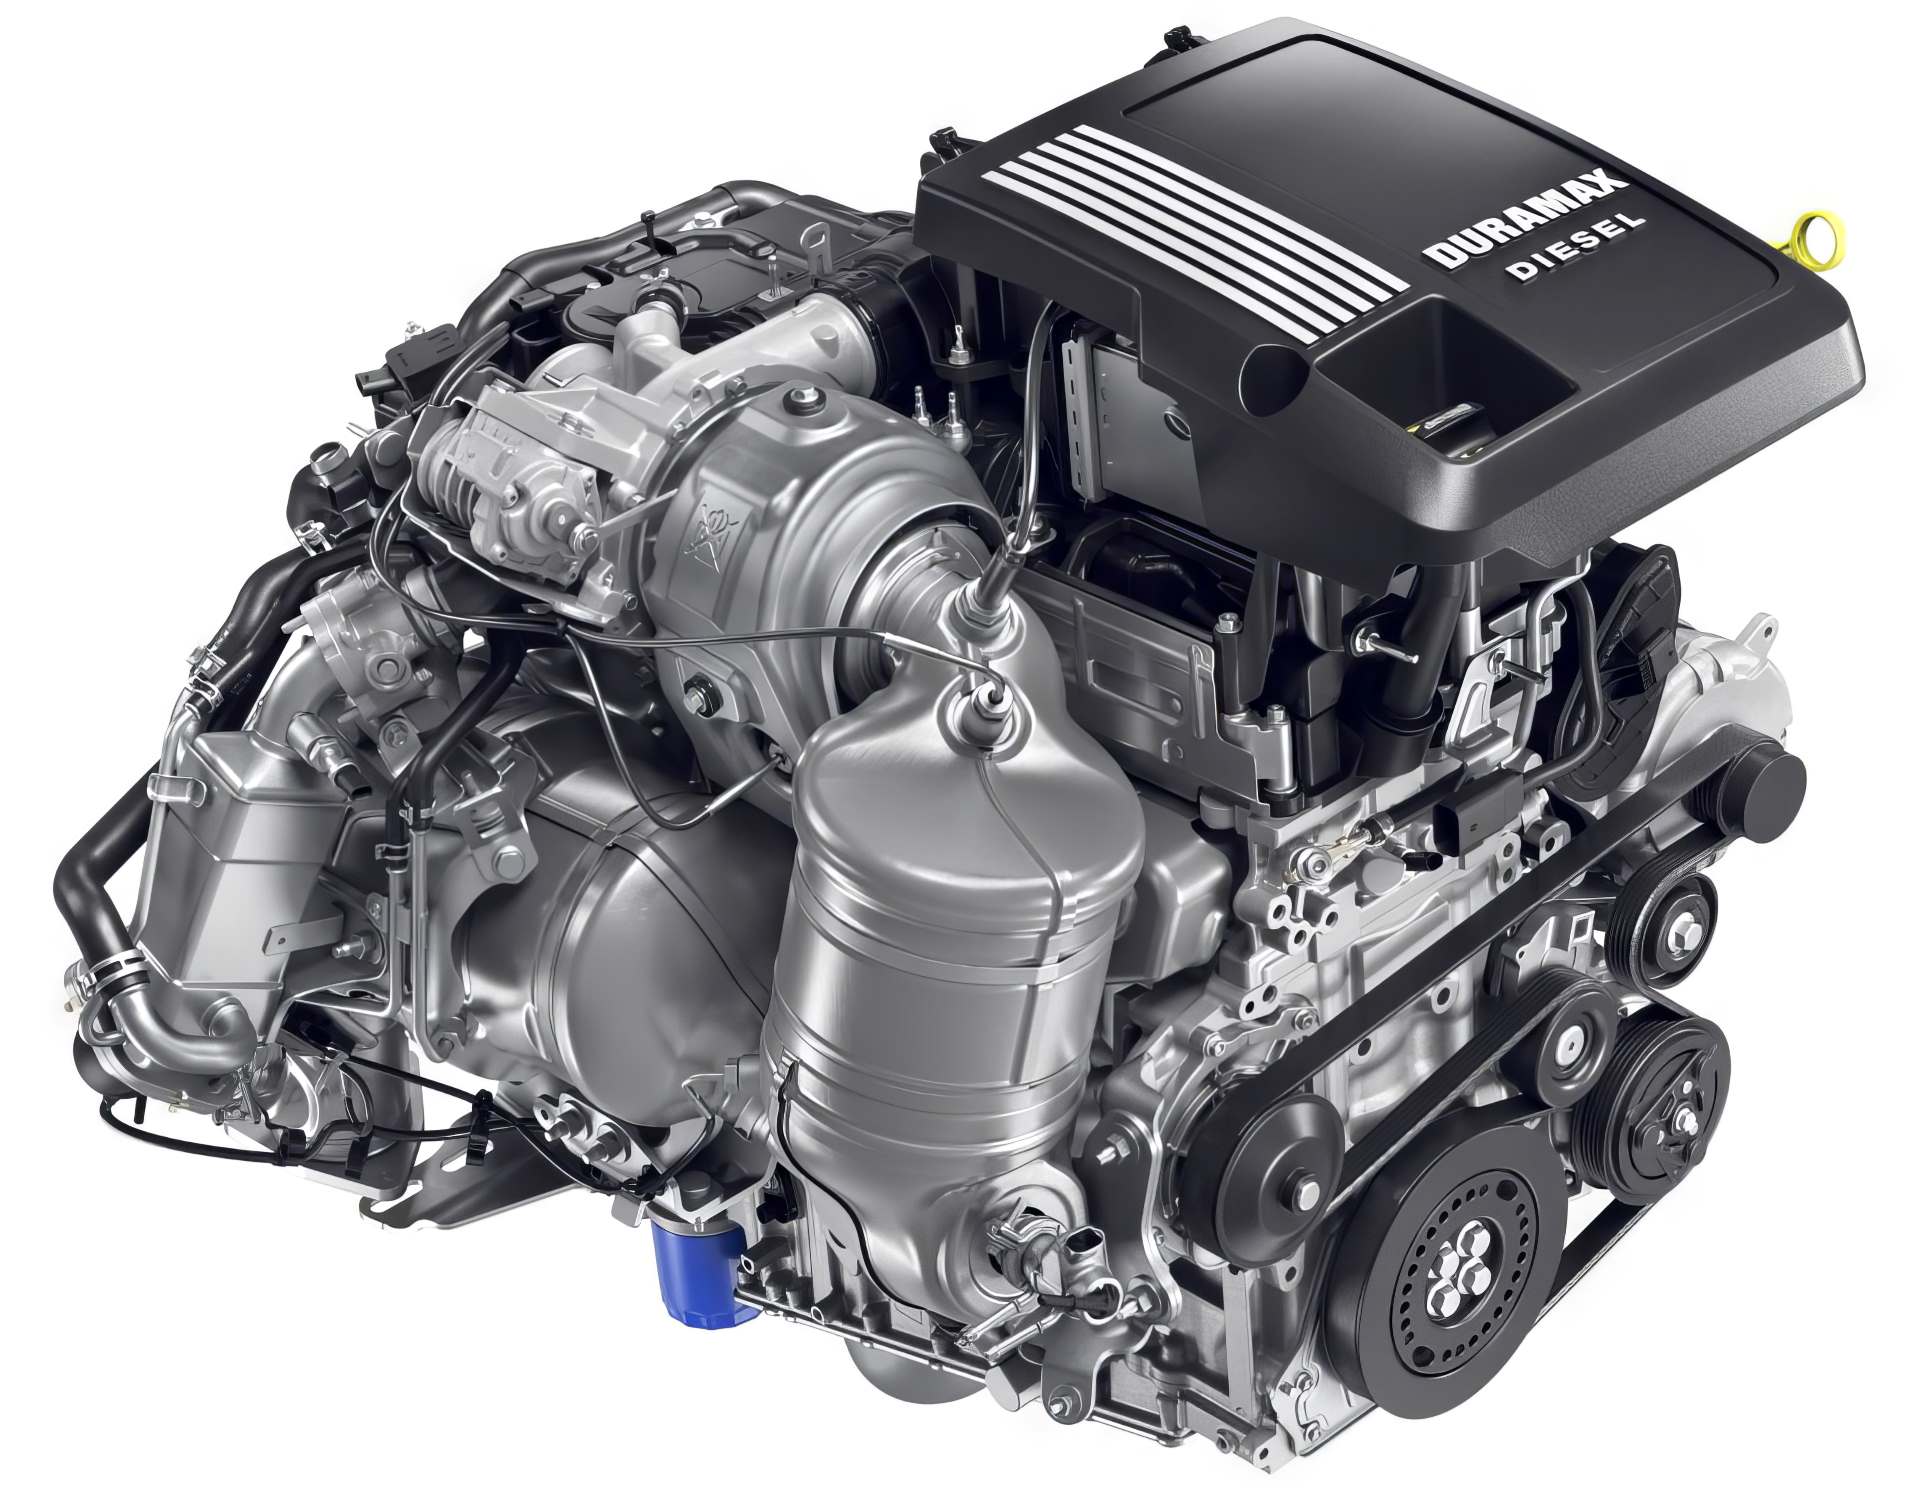 GM's Sierra 1500 diesel engine option, the 3.0-liter Duramax turbo-diesel, enabling 11,000-13,000 lb towing capacity 